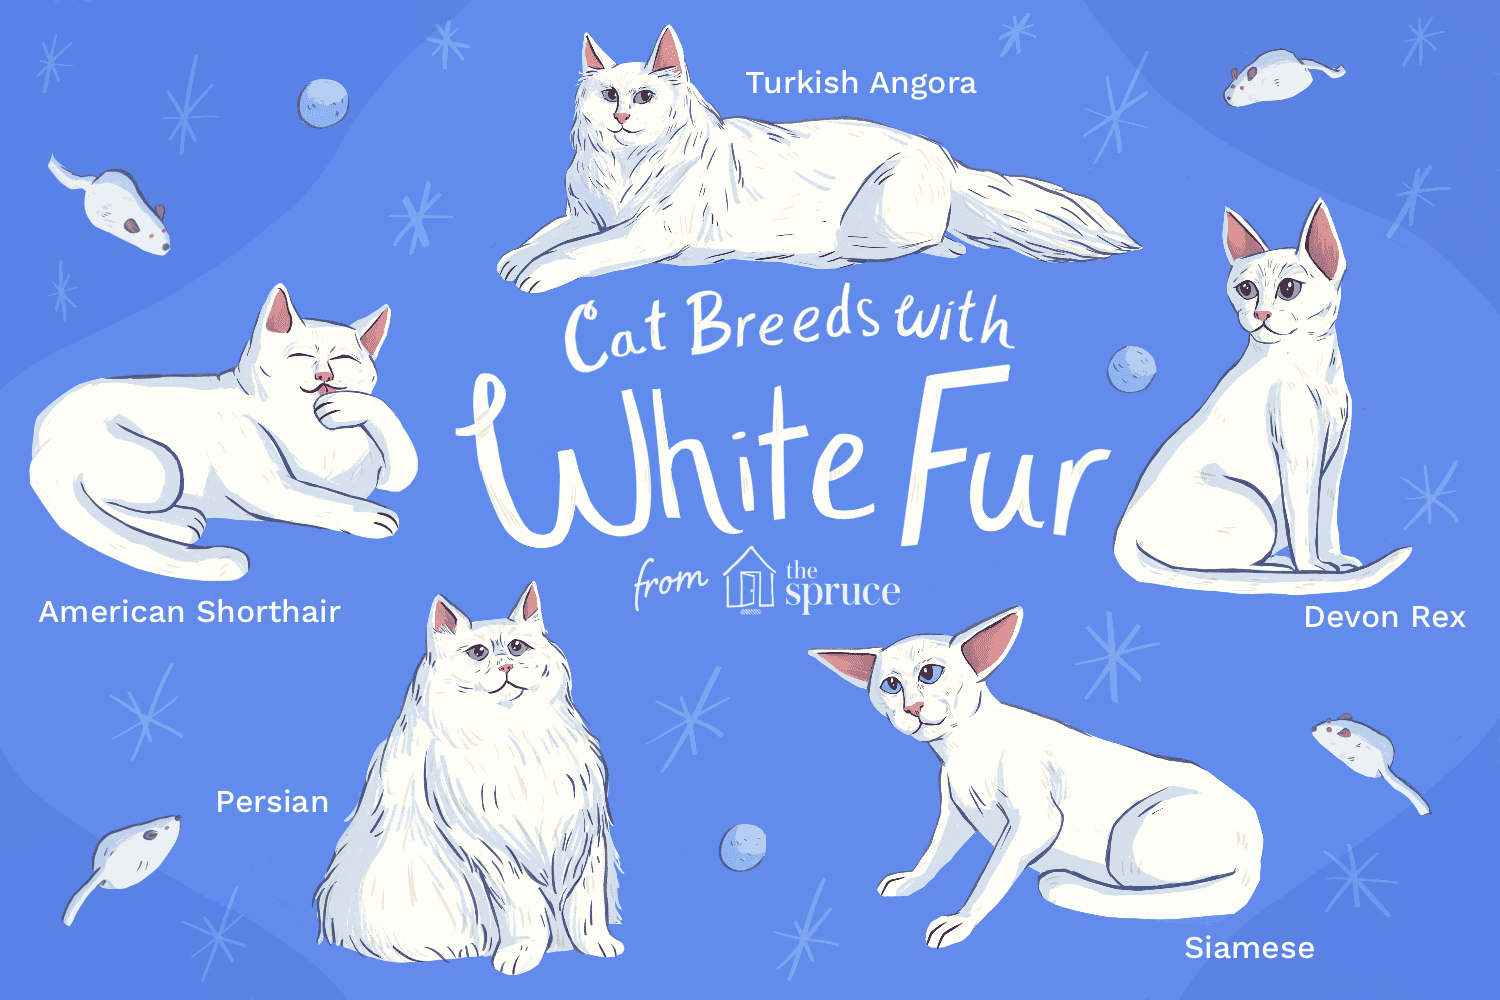 Nejlepší plemena bílých koček, která lze chovat jako domácí mazlíčky